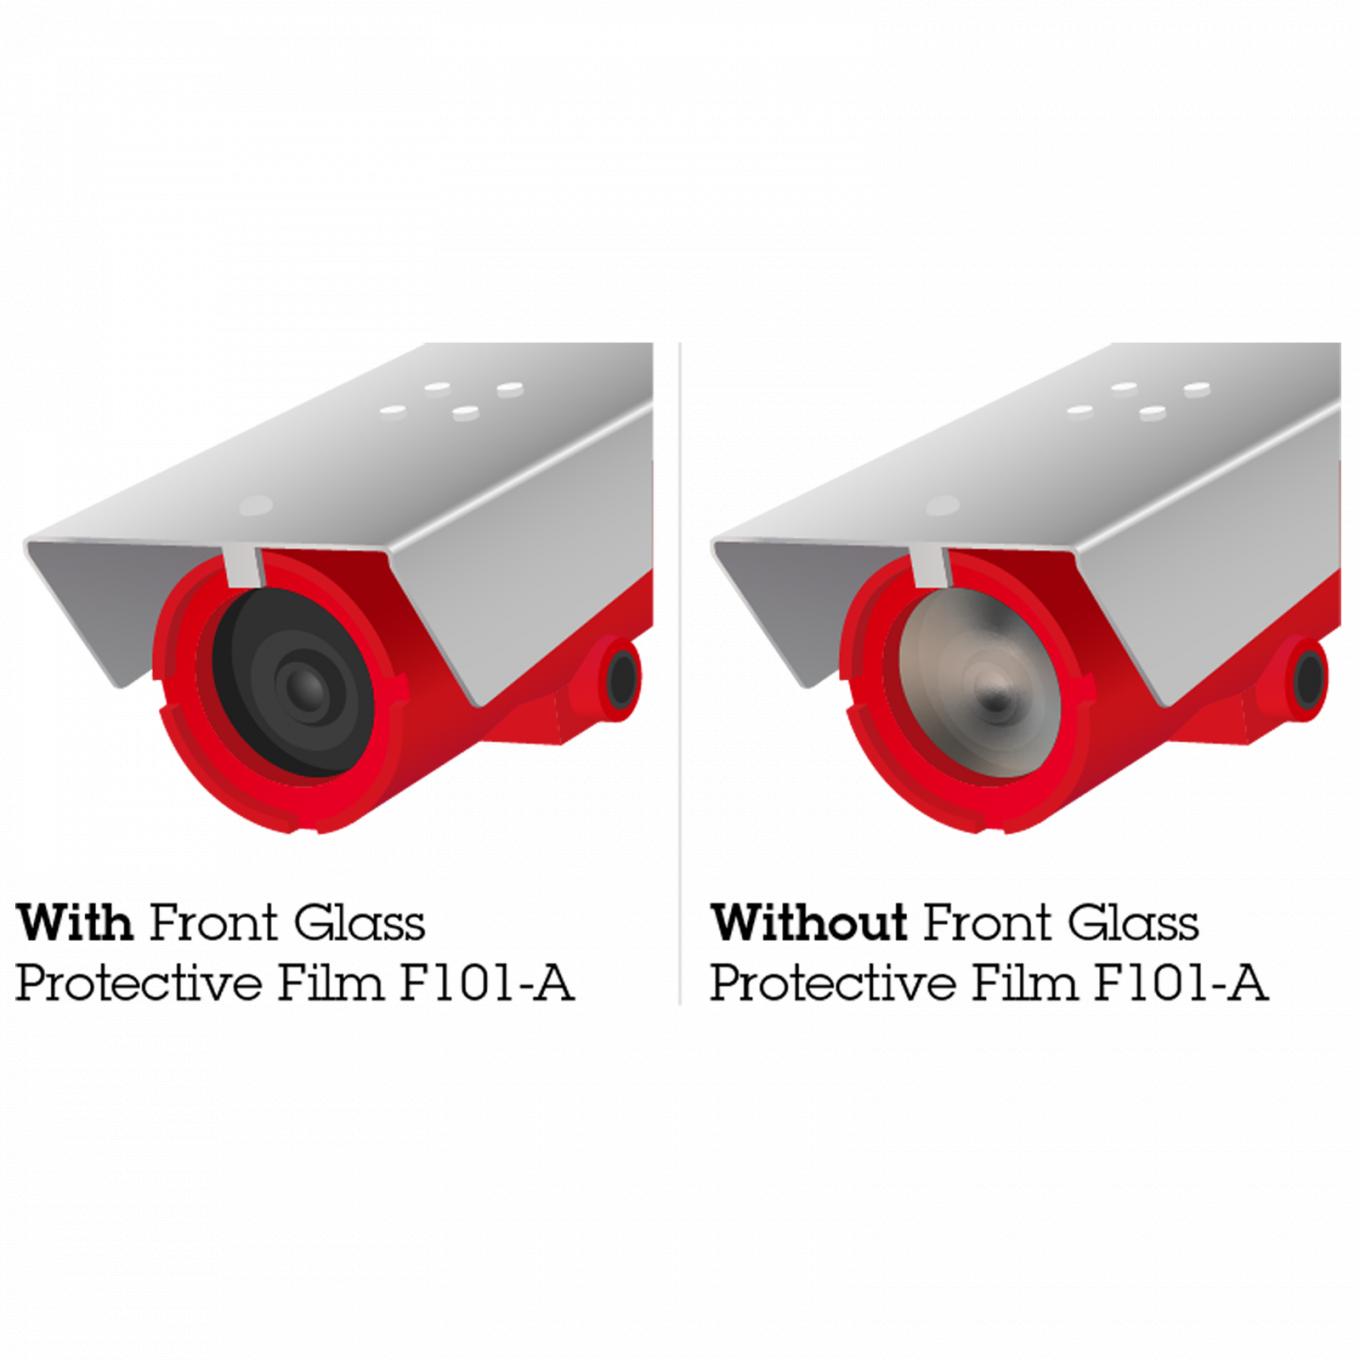 Front Glass Protective Film F101-A, vista desde su ángulo izquierdo